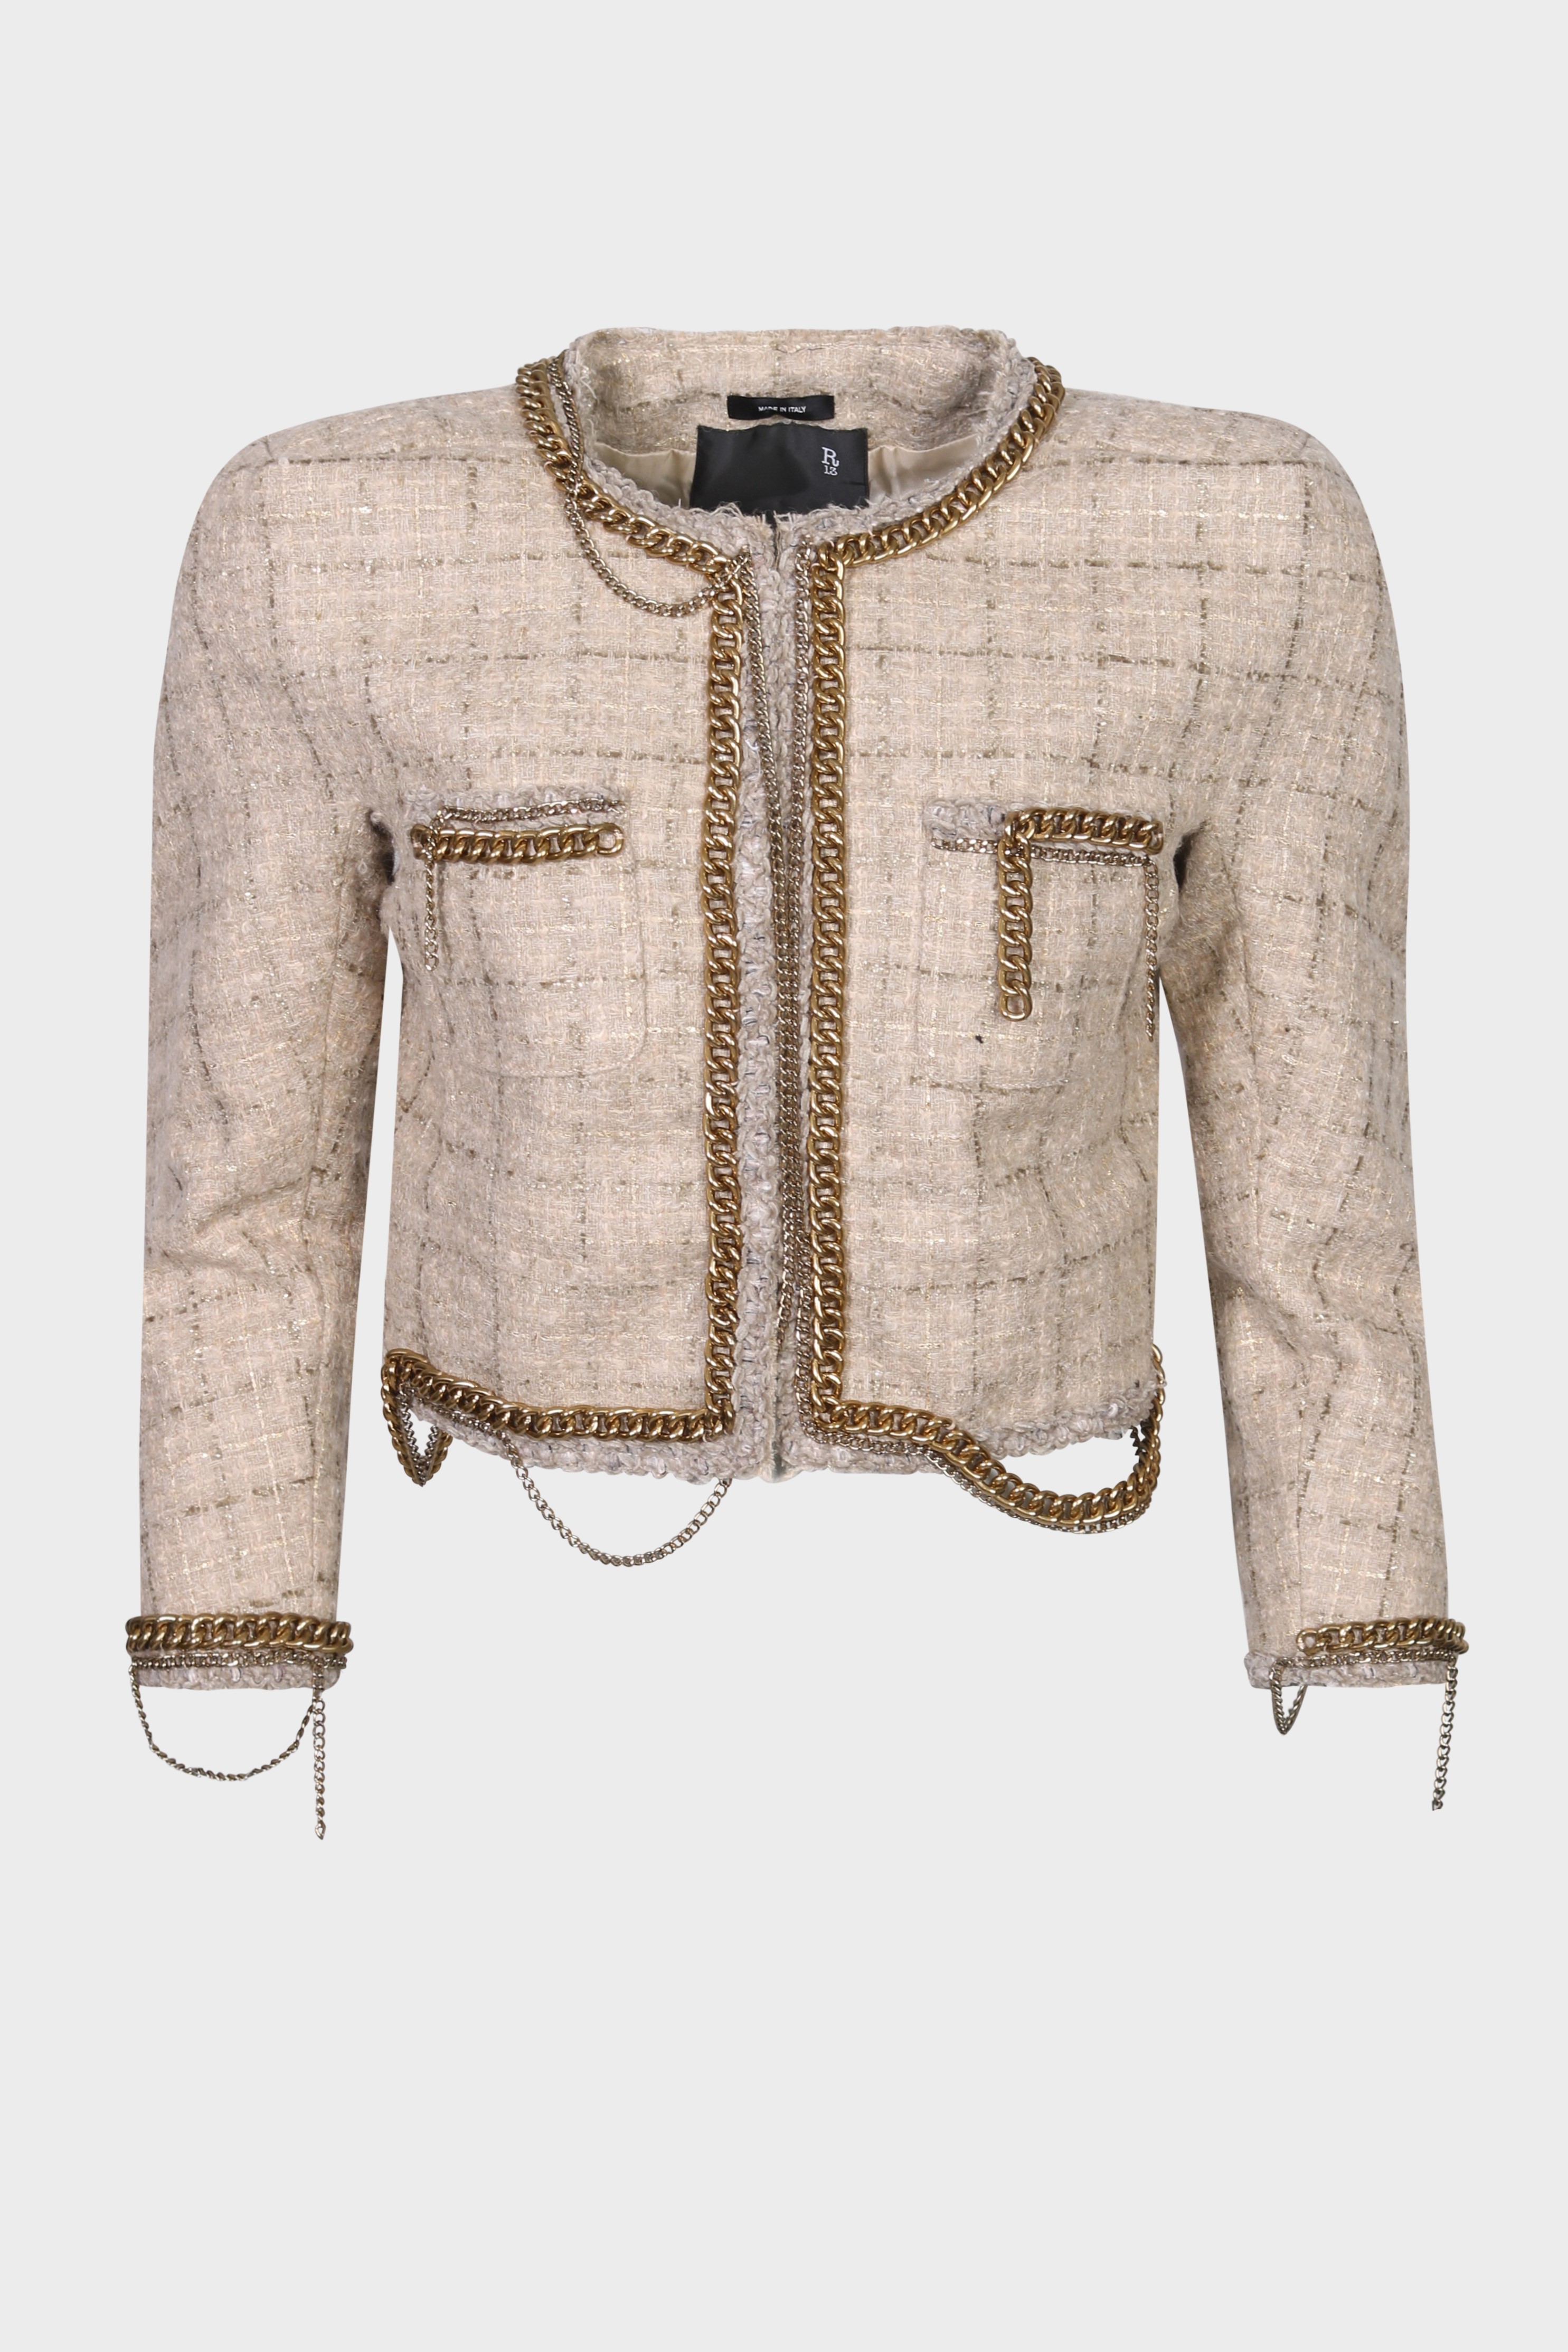 R13 Square Shoulder Tweed Jacket in Beige S